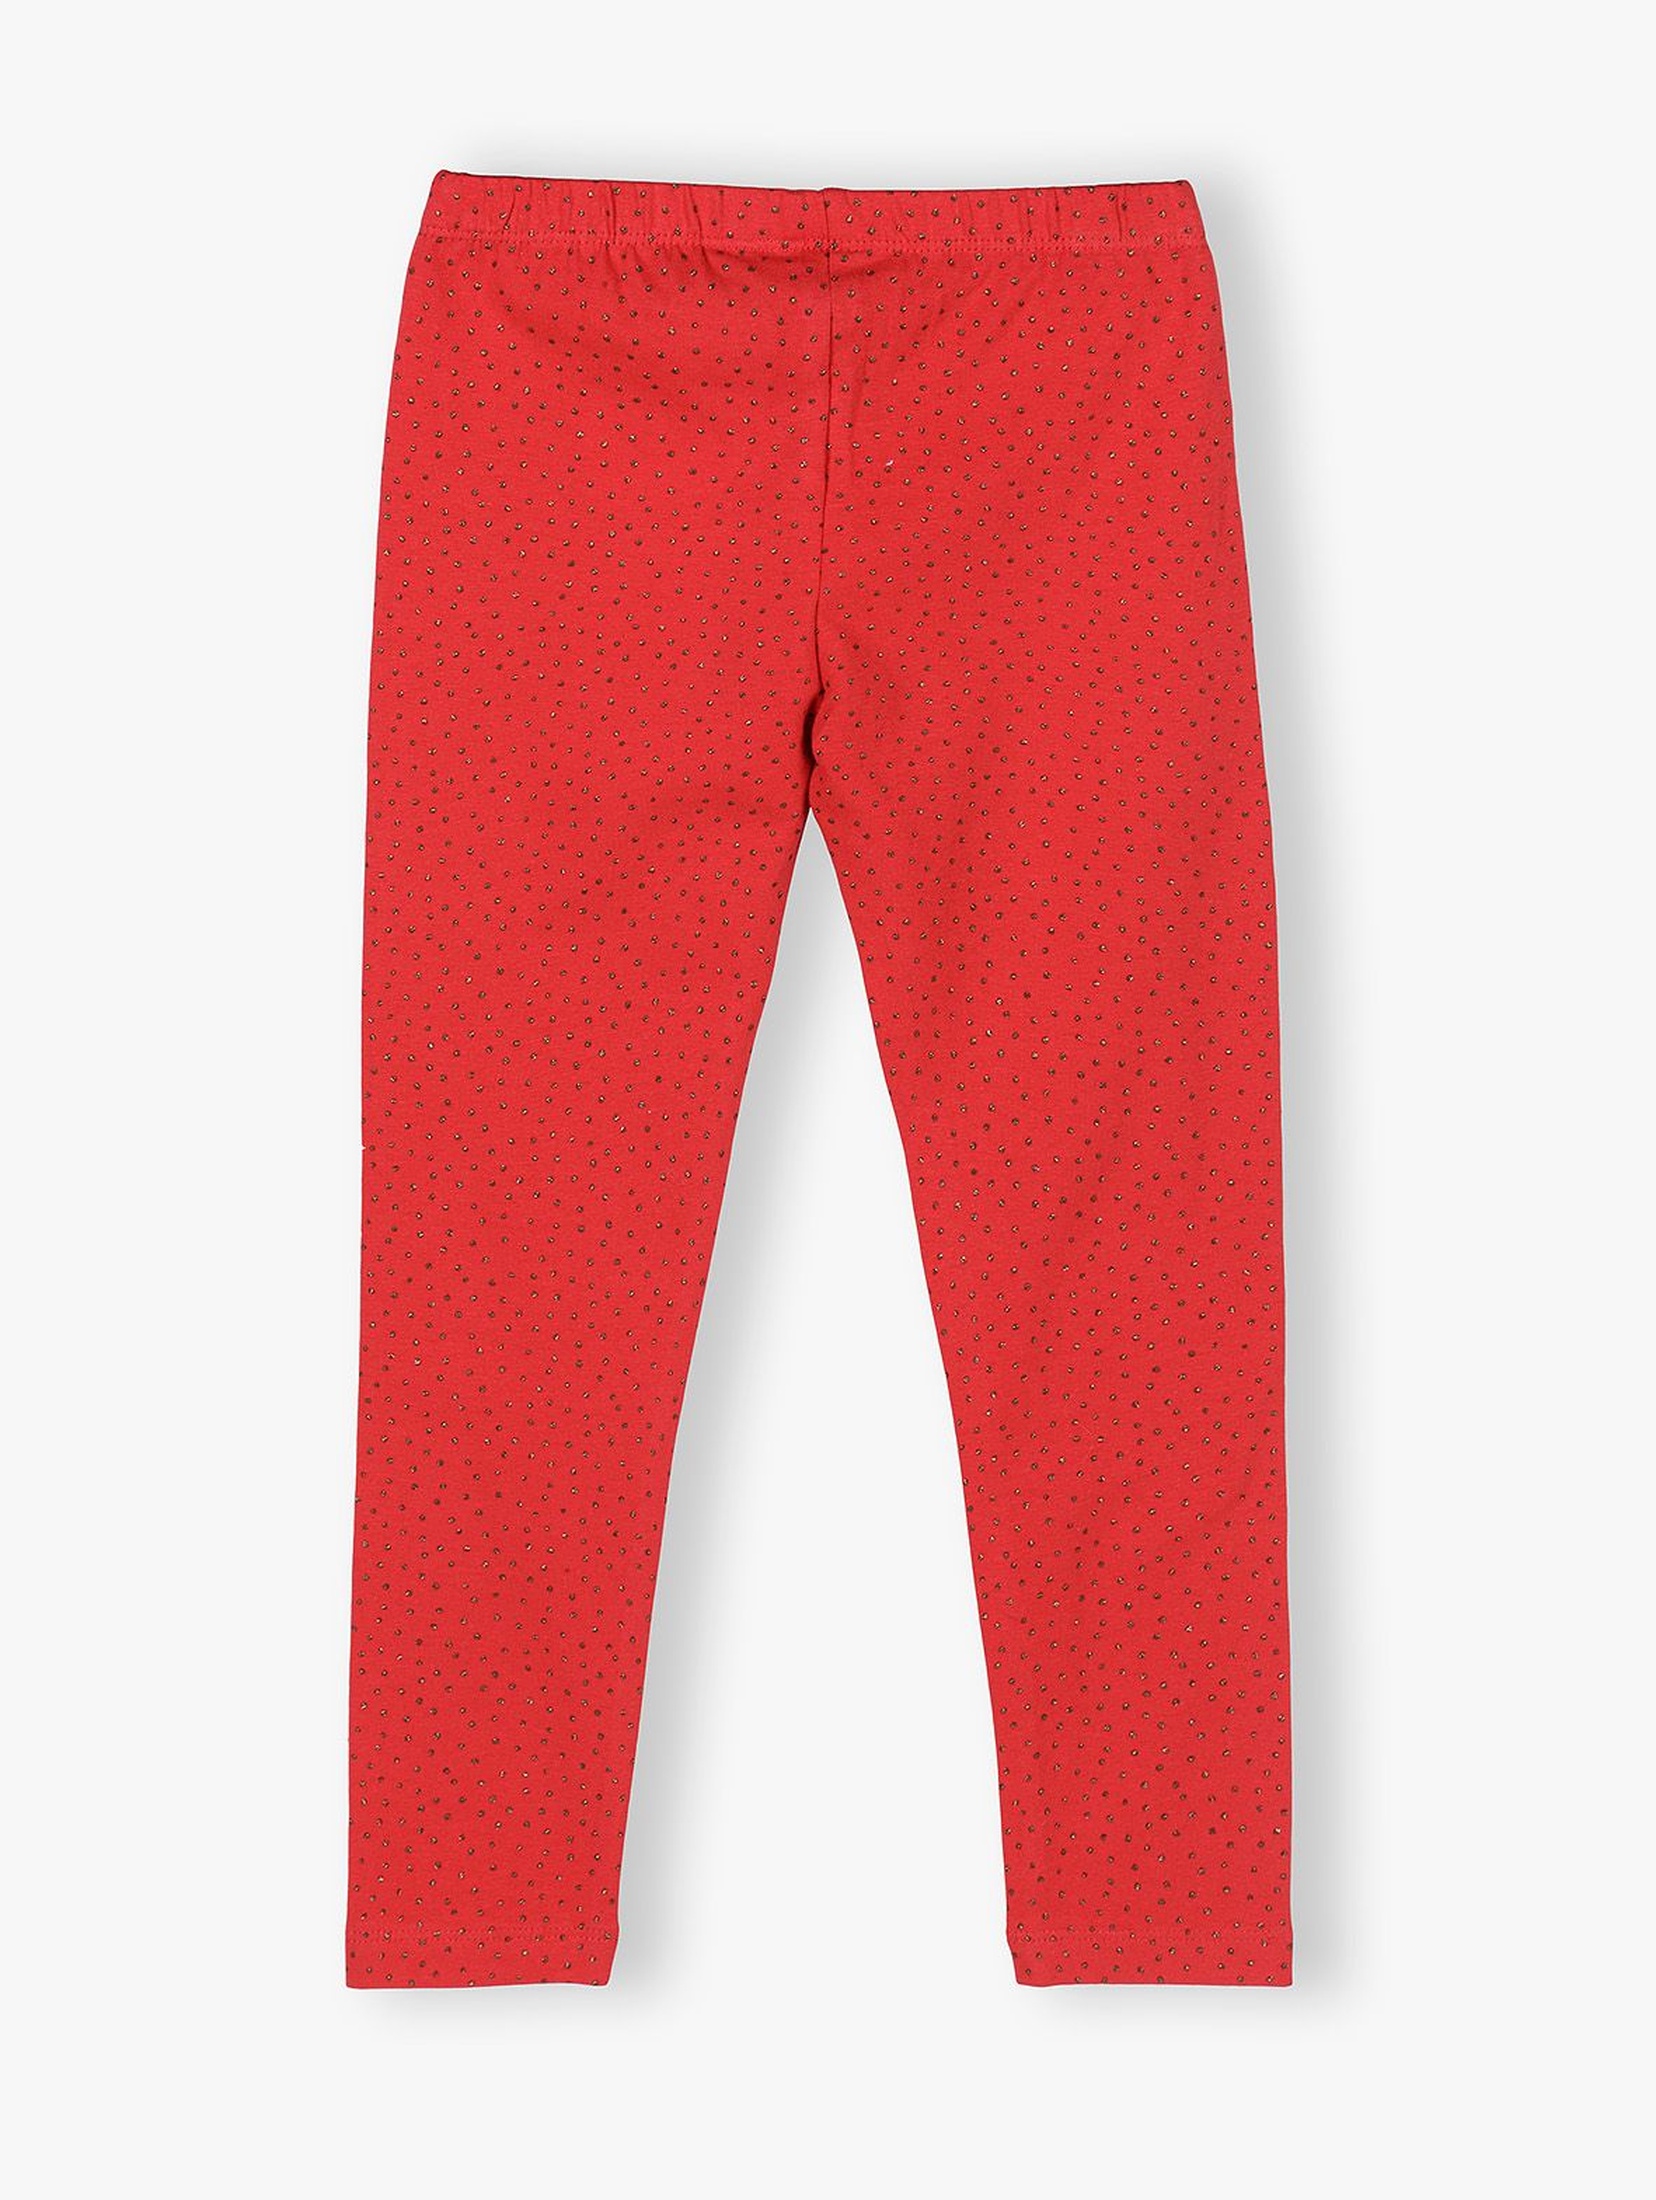 Czerwone legginsy dziewczęce z połyskującym nadrukiem